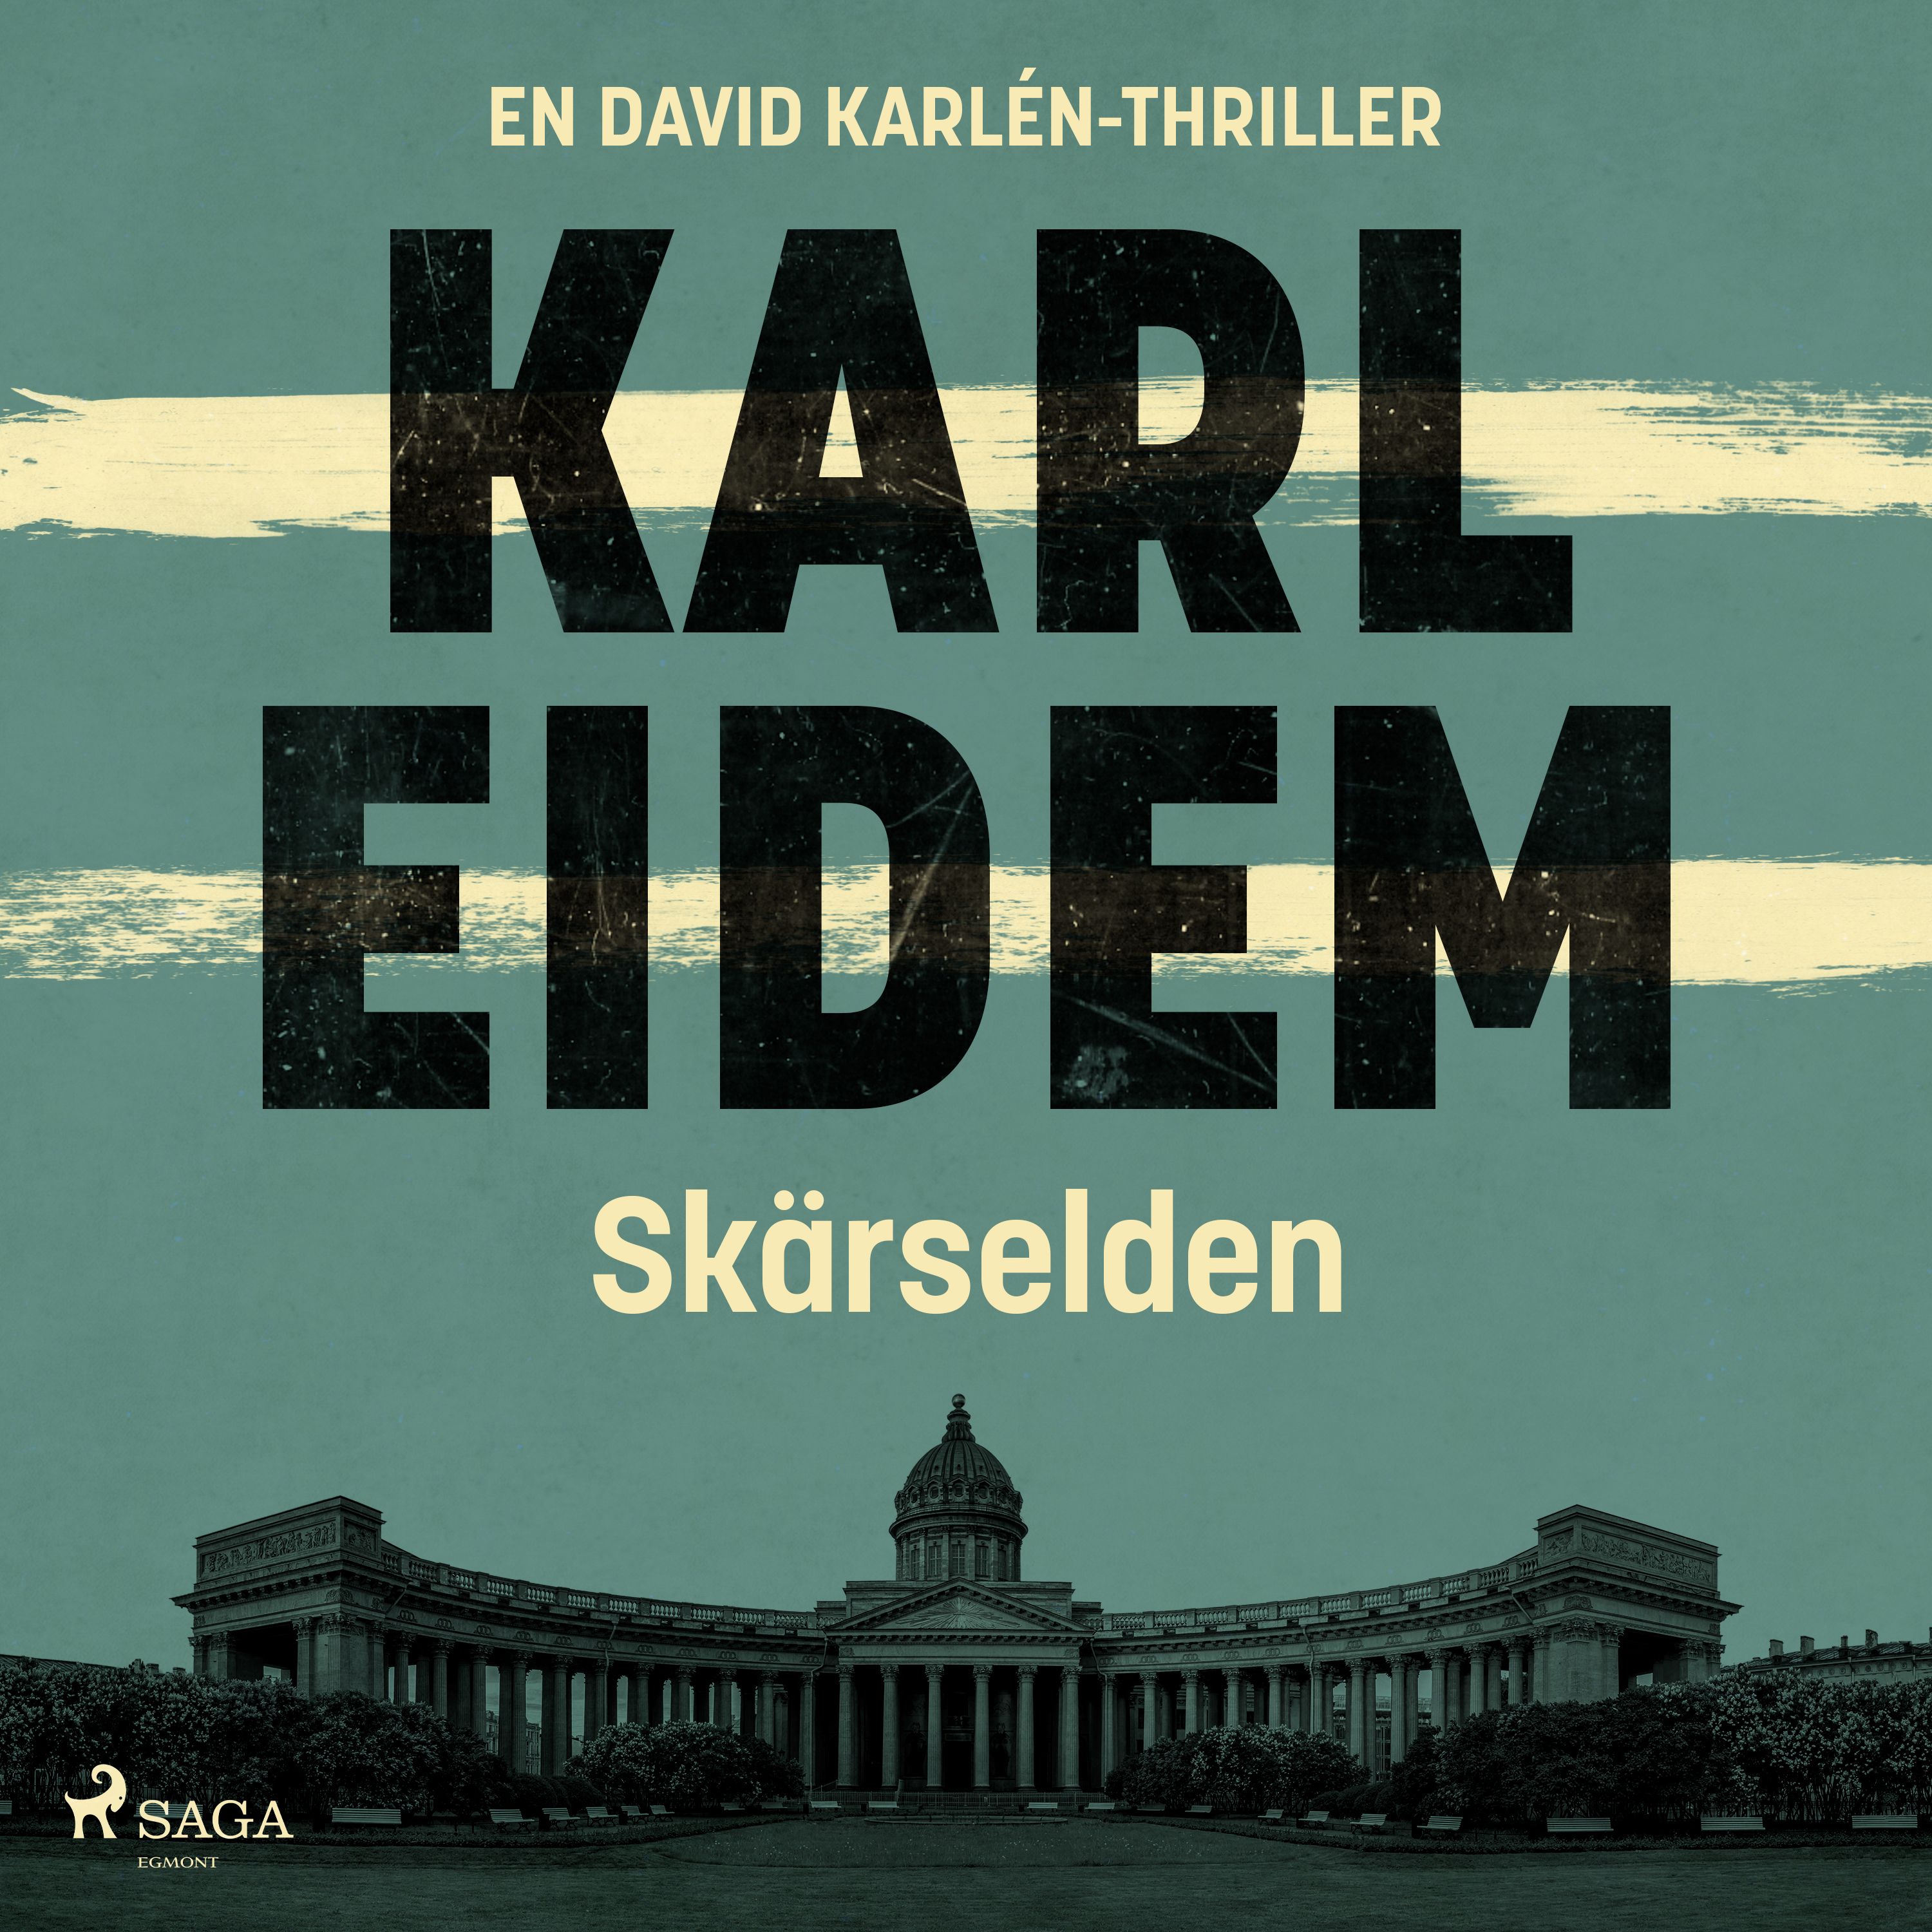 Skärselden, ljudbok av Karl Eidem